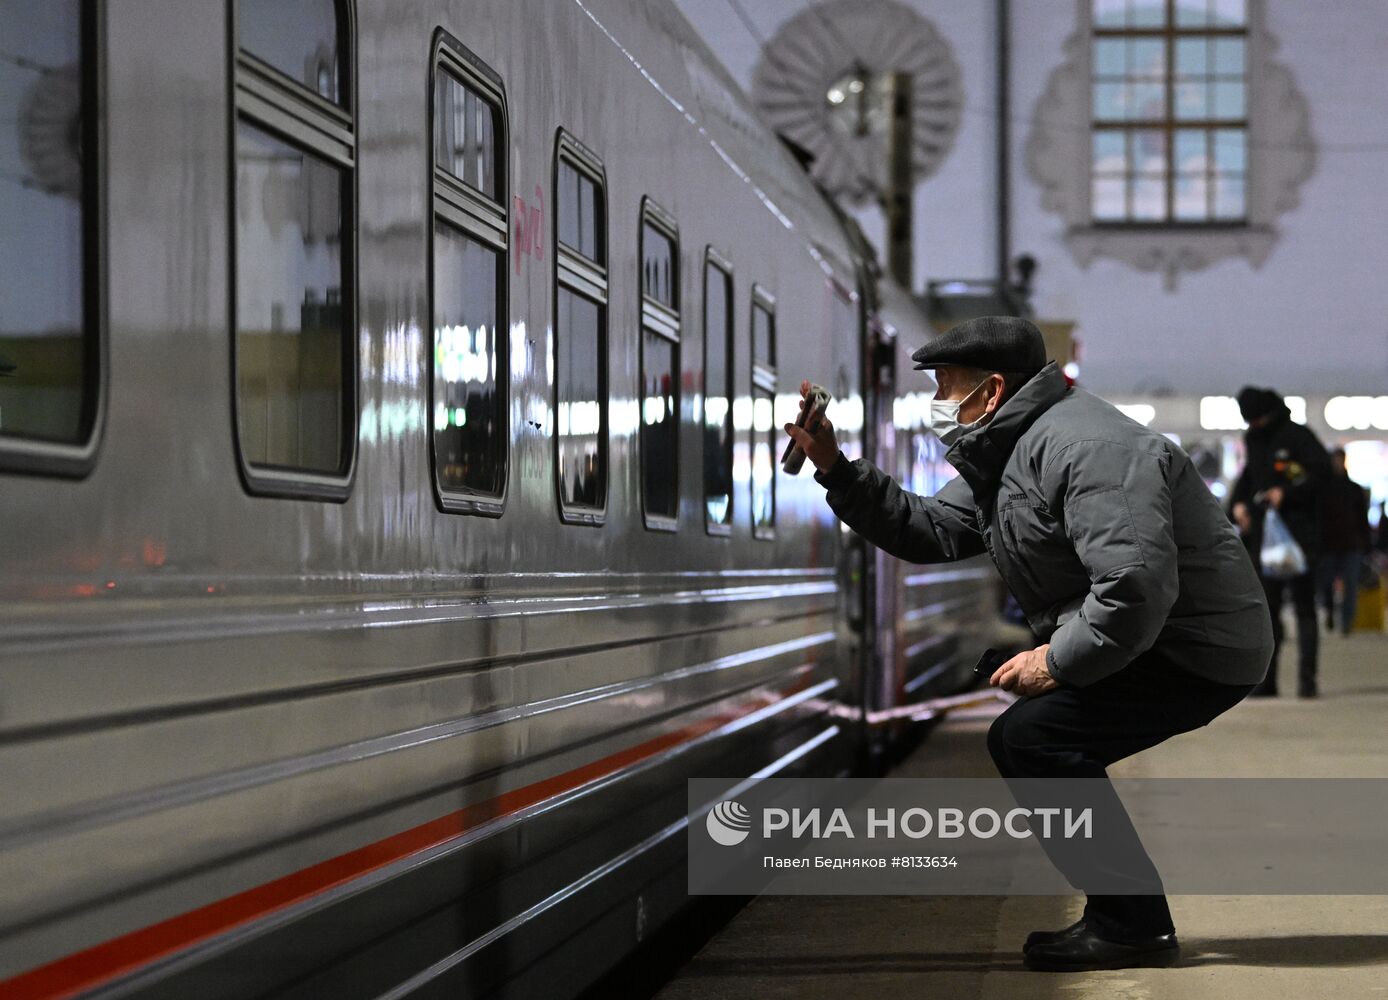 Запуск нового туристического маршрута на поезде "В Сибирь"